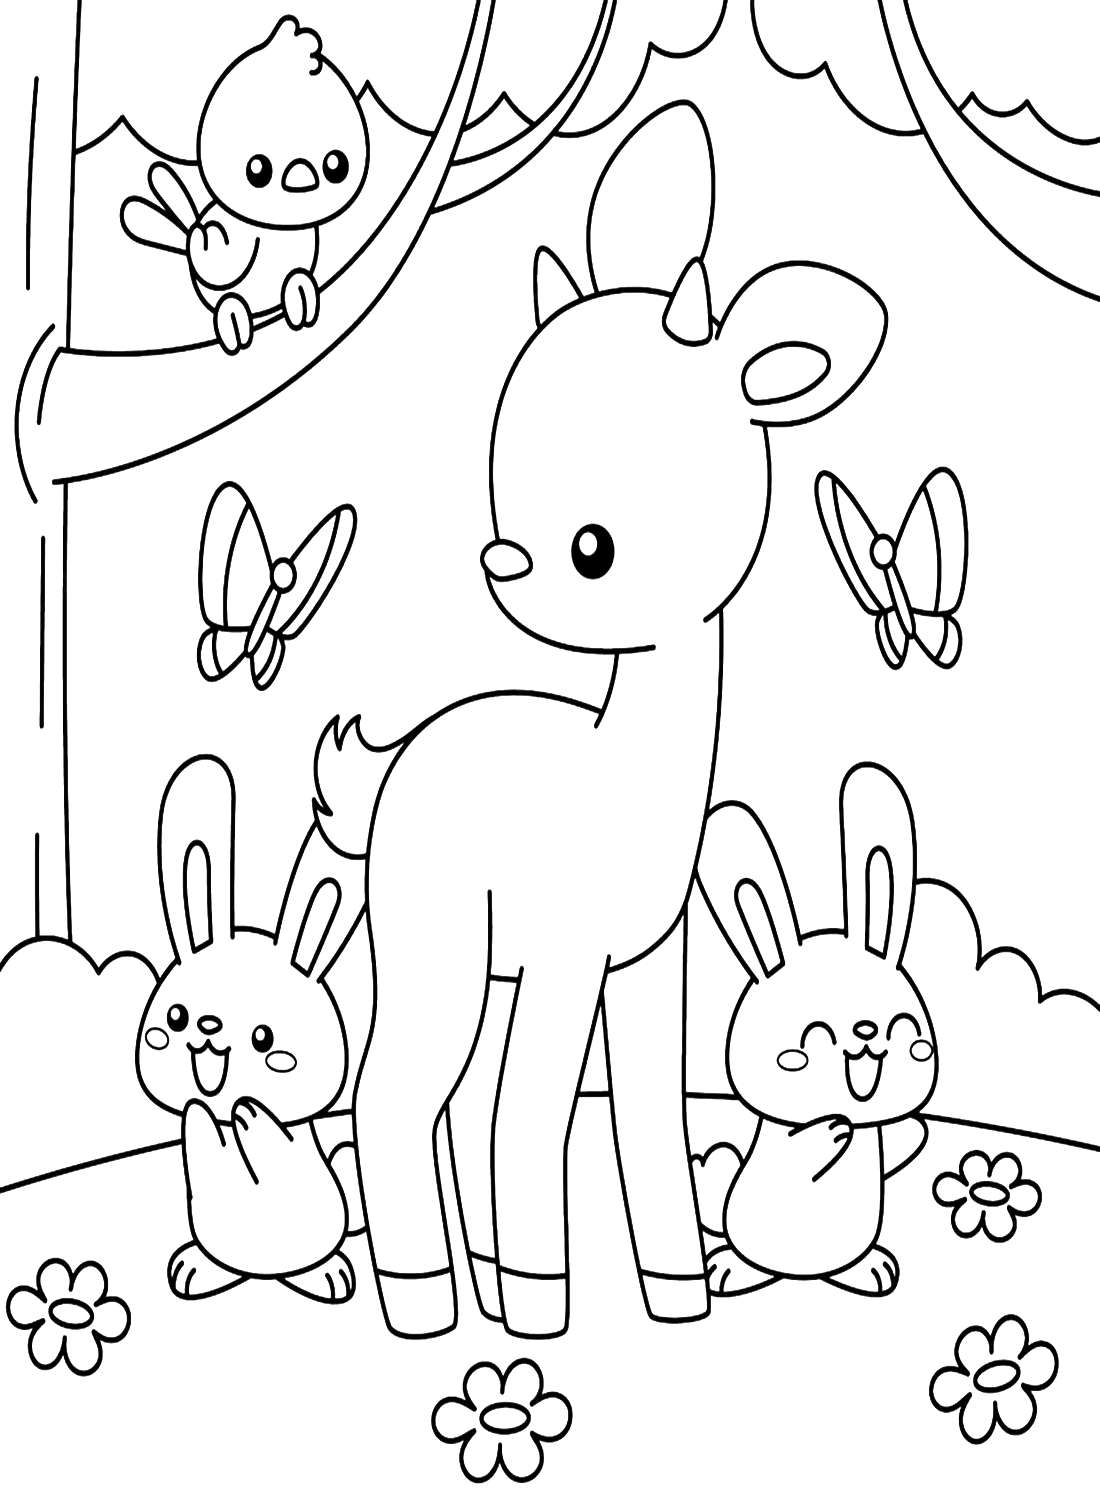 Coelhos com amigos na floresta from Rabbit